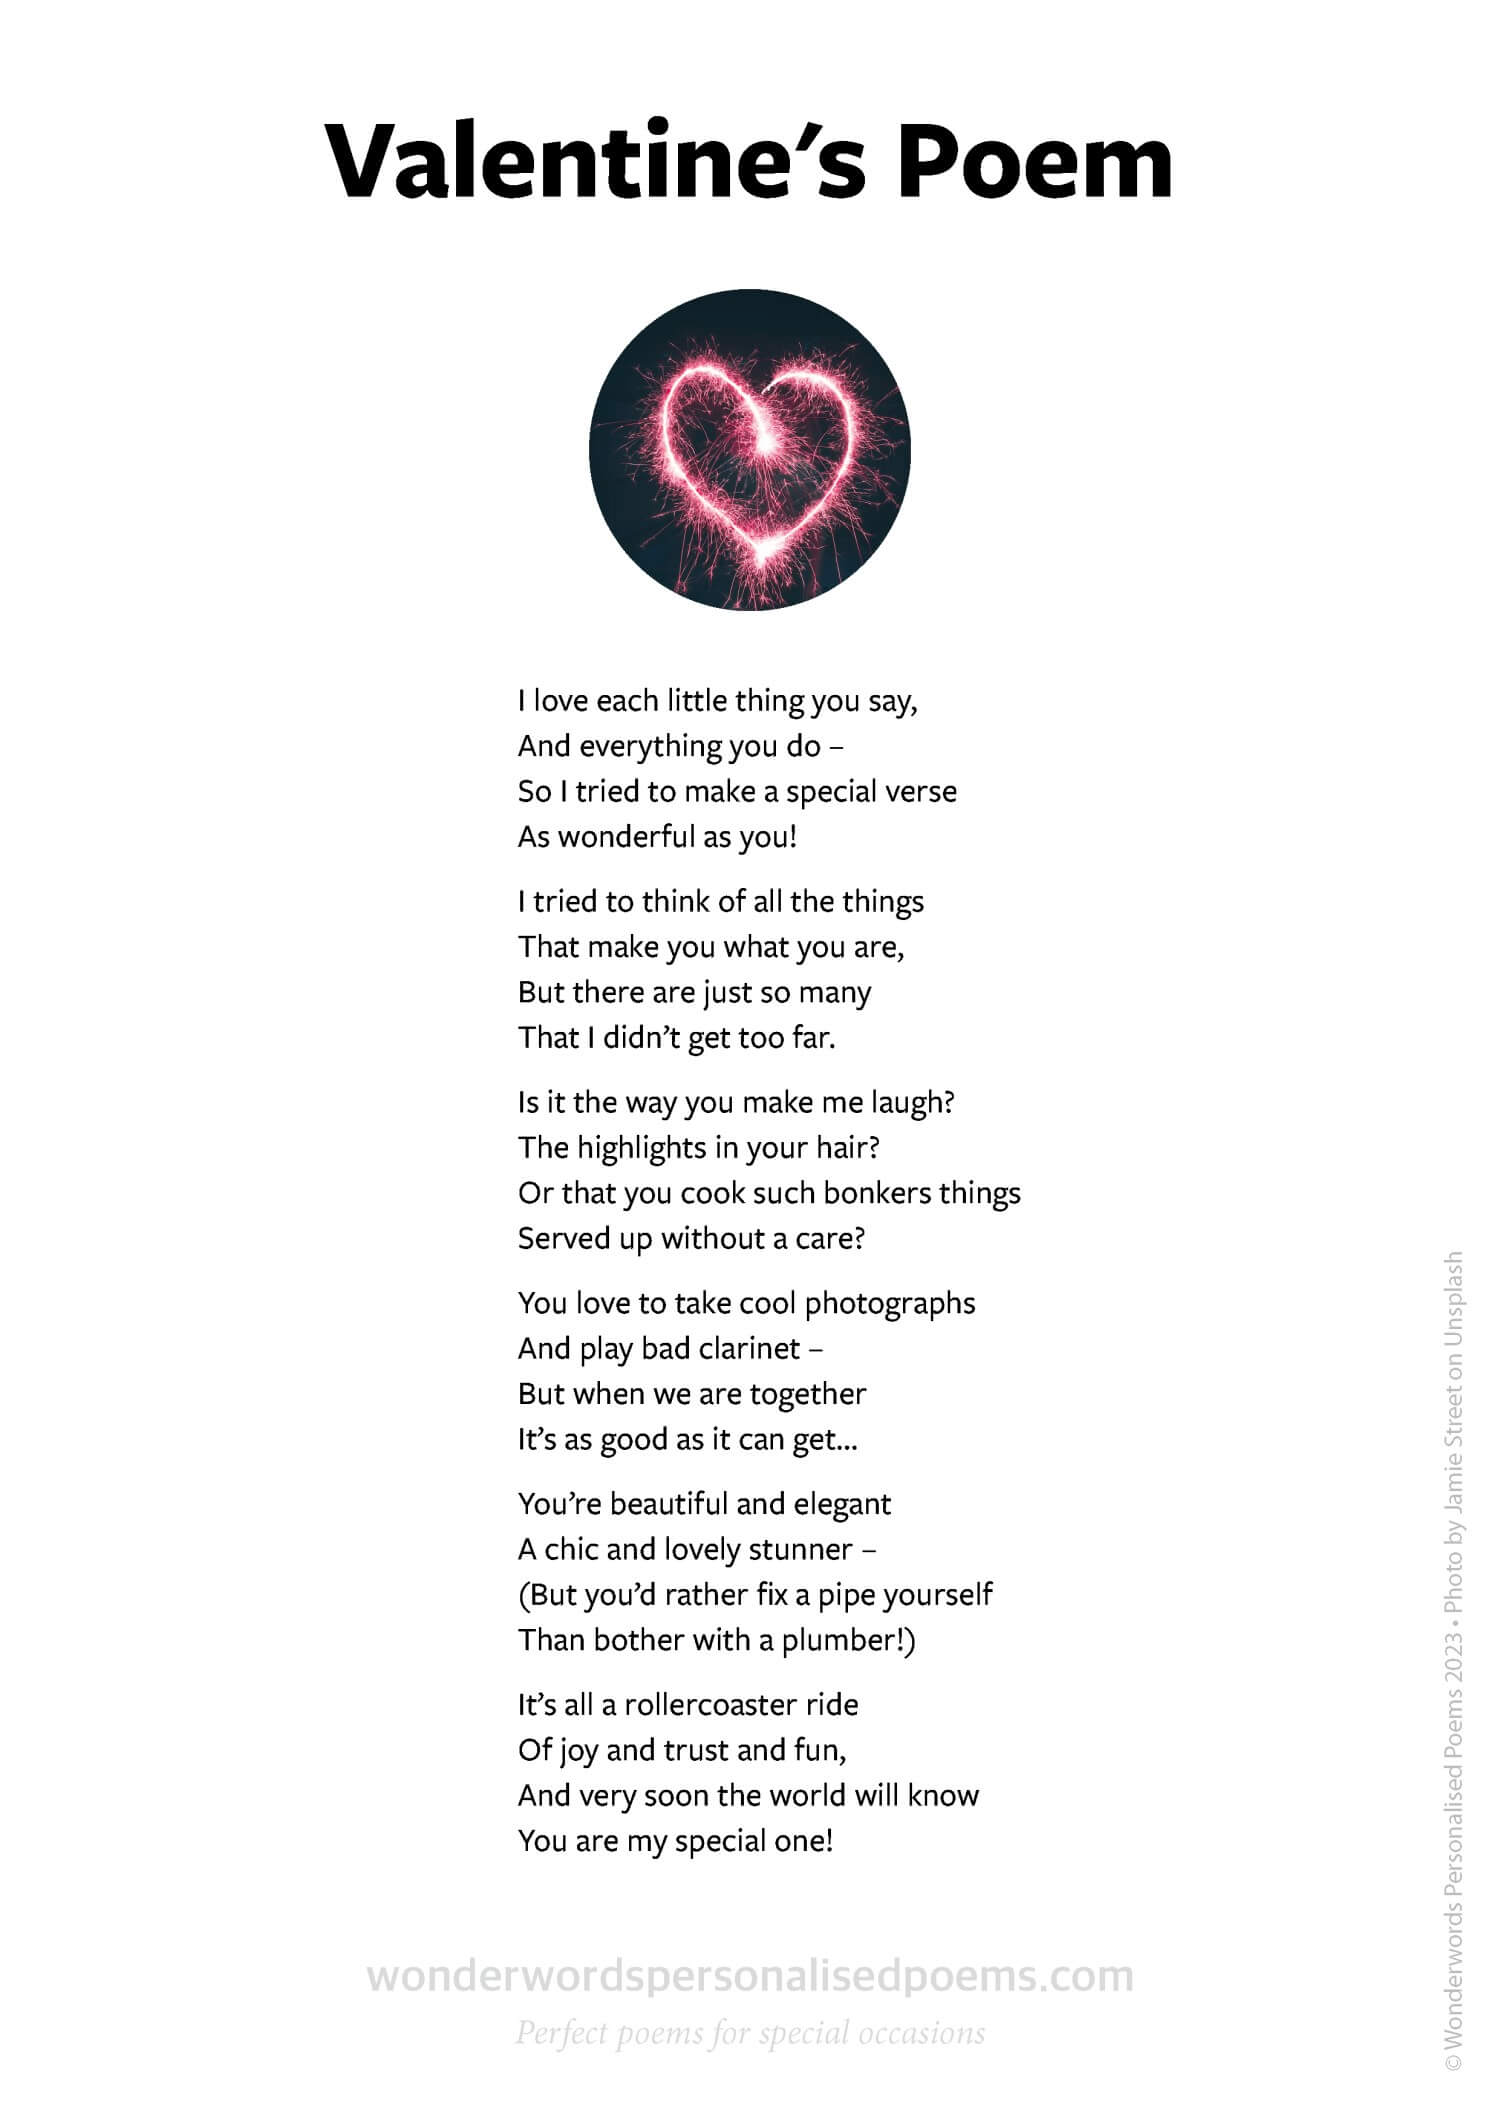 A sample Valentine's poem from Wonderwords Personalised Poems